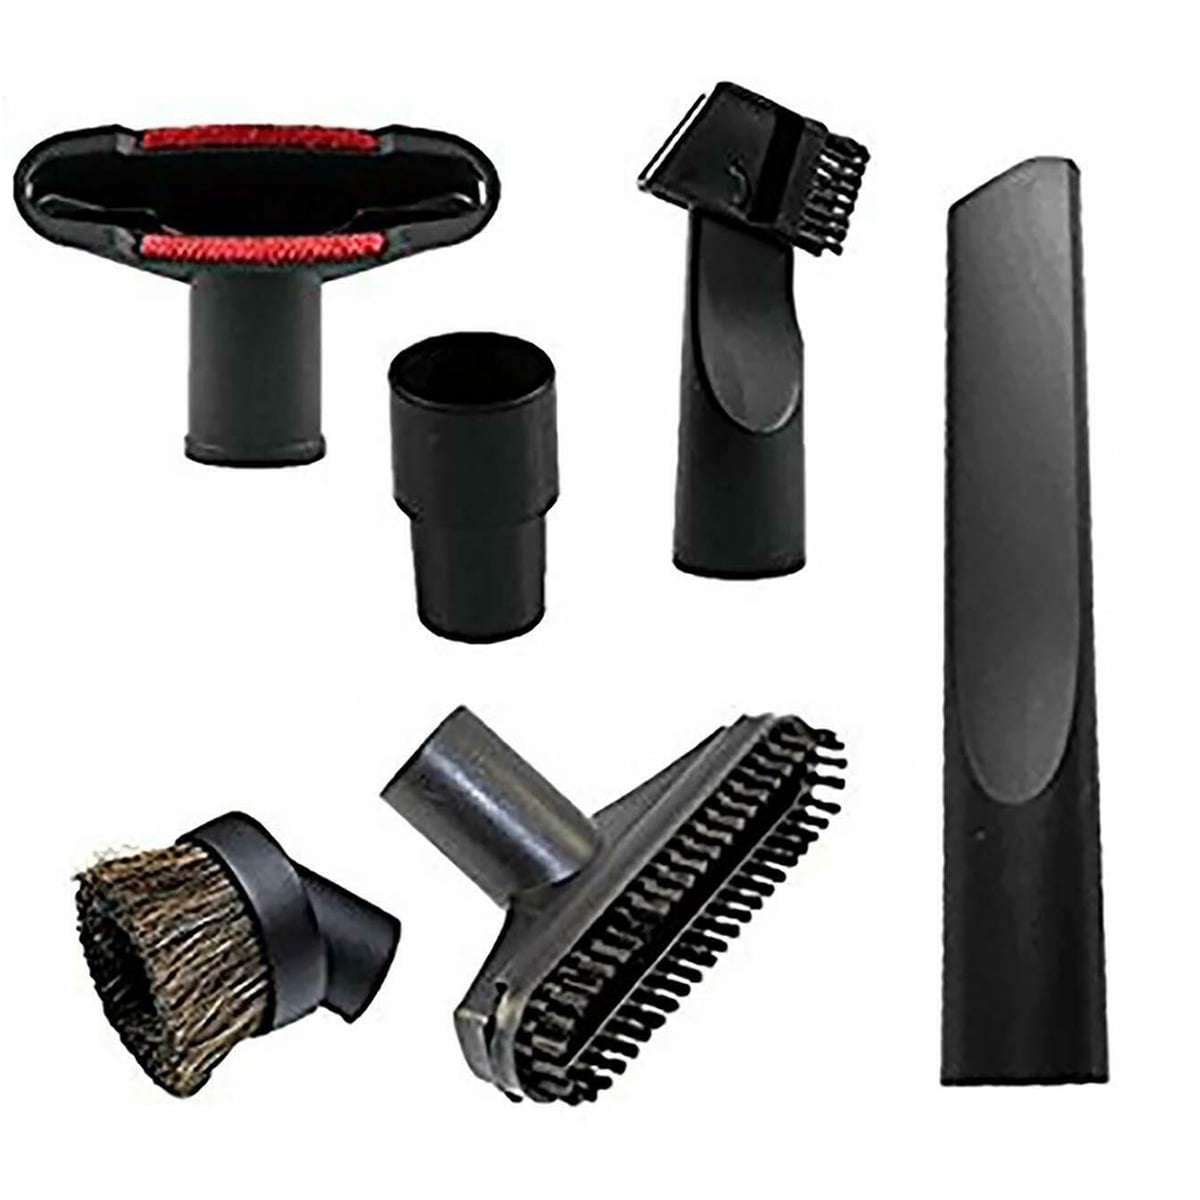 6pcs Universal Vacuum Cleaner Carpet Floor Nozzle Brush Attachment Head Tool Kit 